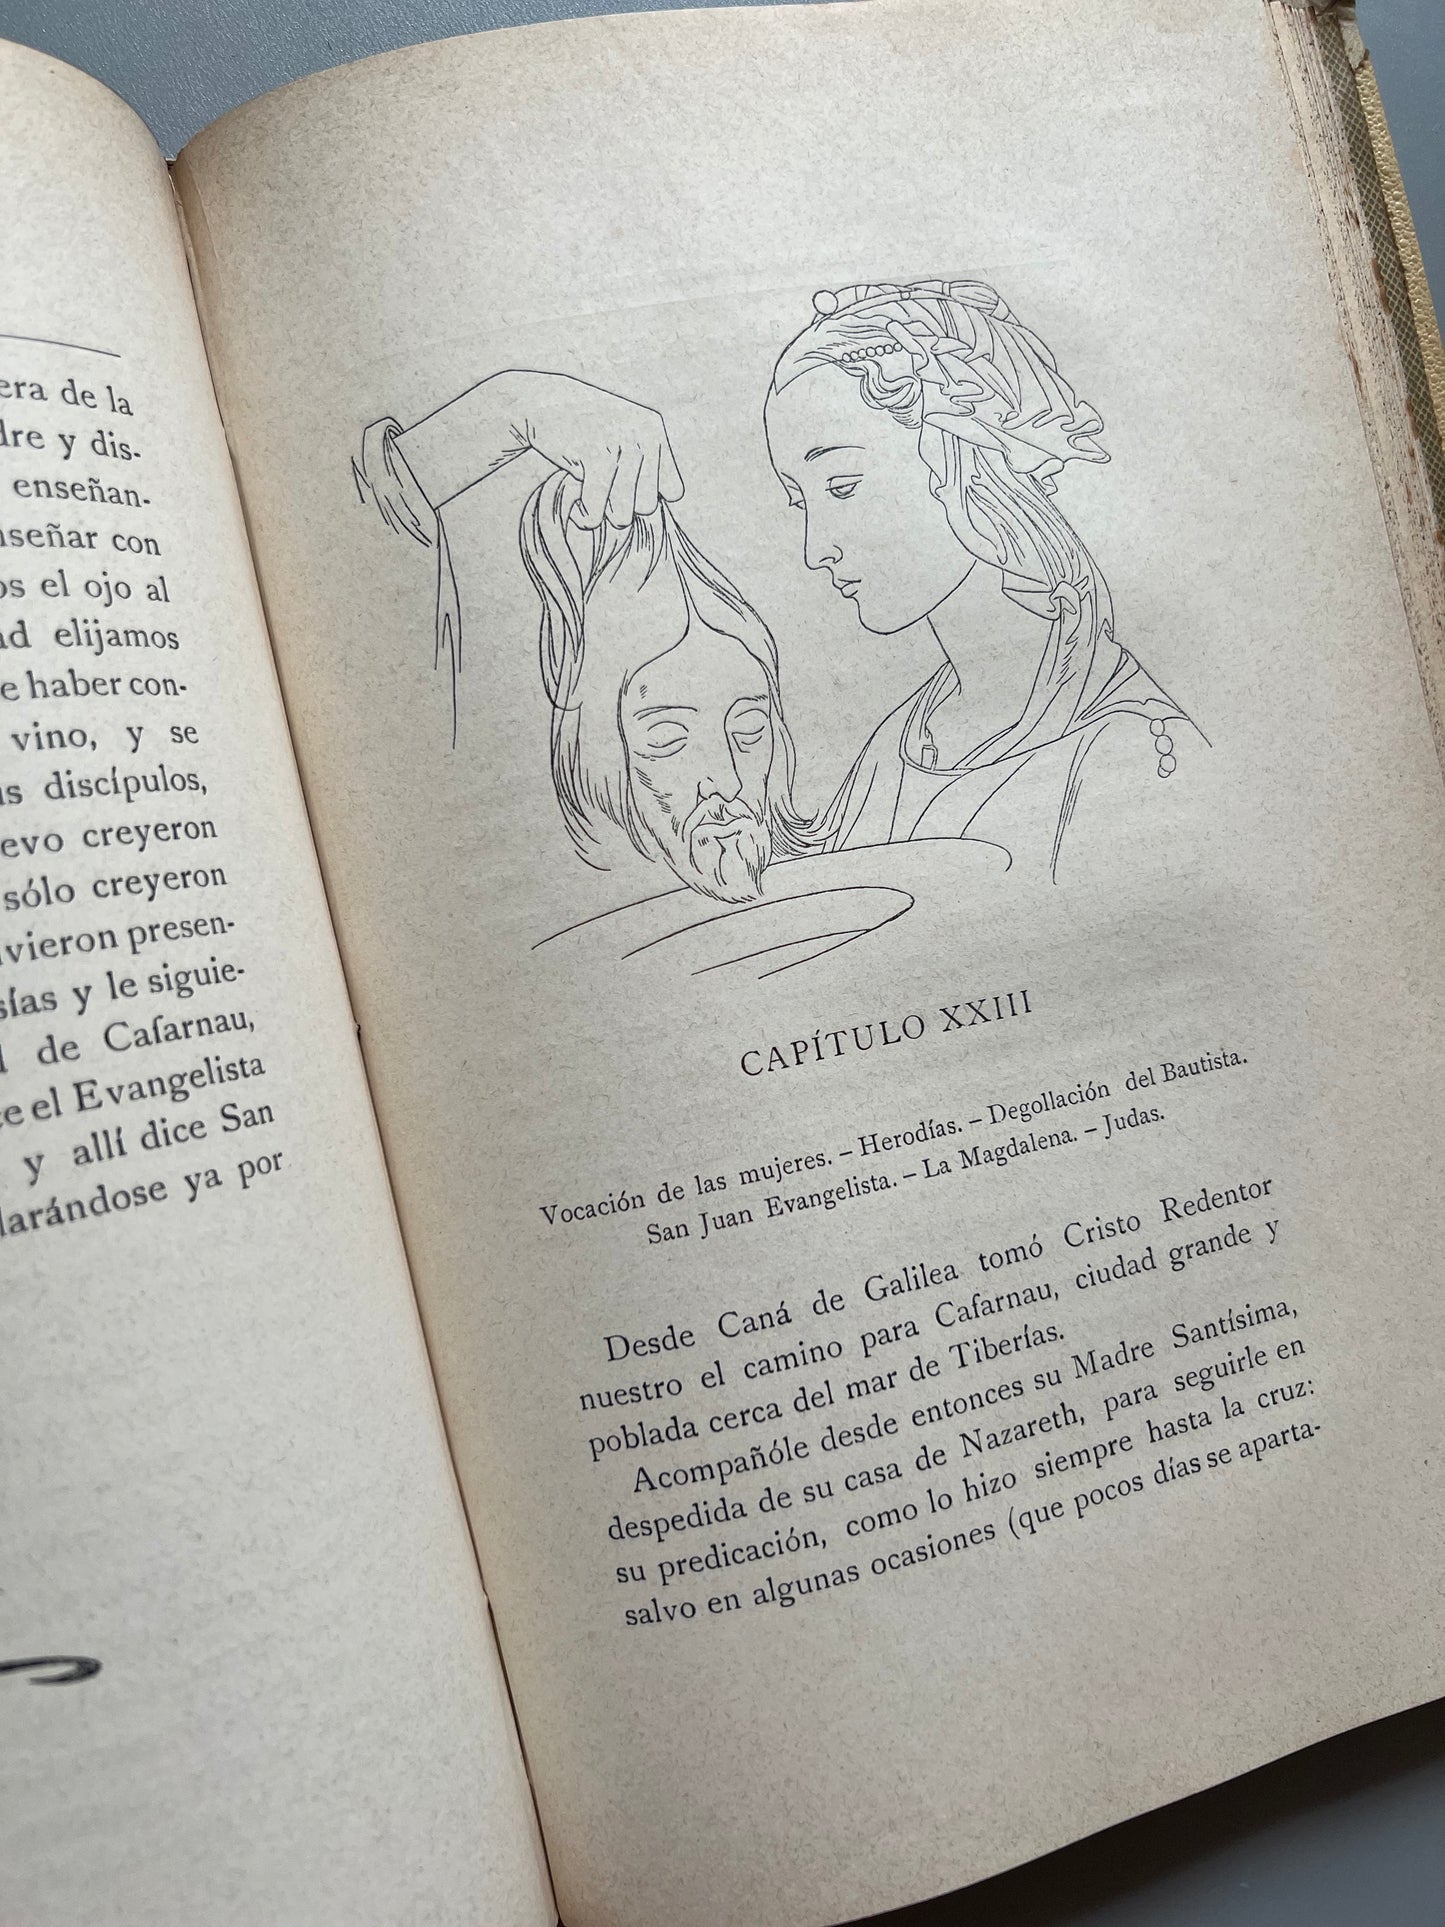 Vida de la virgen María, Sor María de Jesús de Agreda - Montaner y Simón, 1899